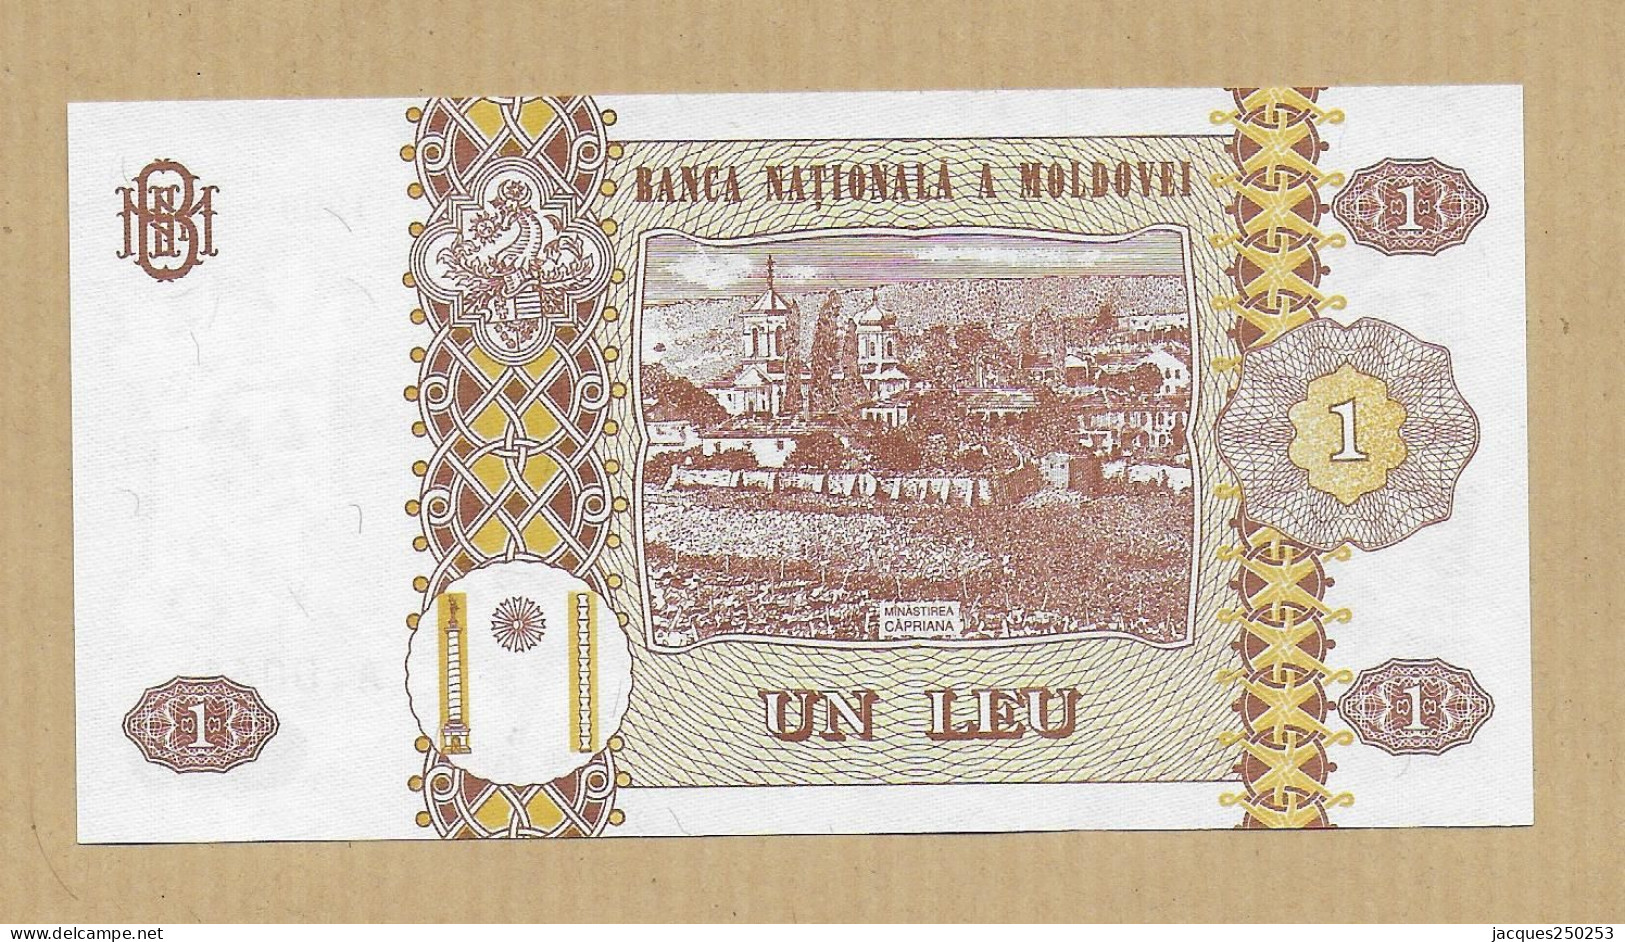 1 LEU 1999 NEUF - Moldawien (Moldau)